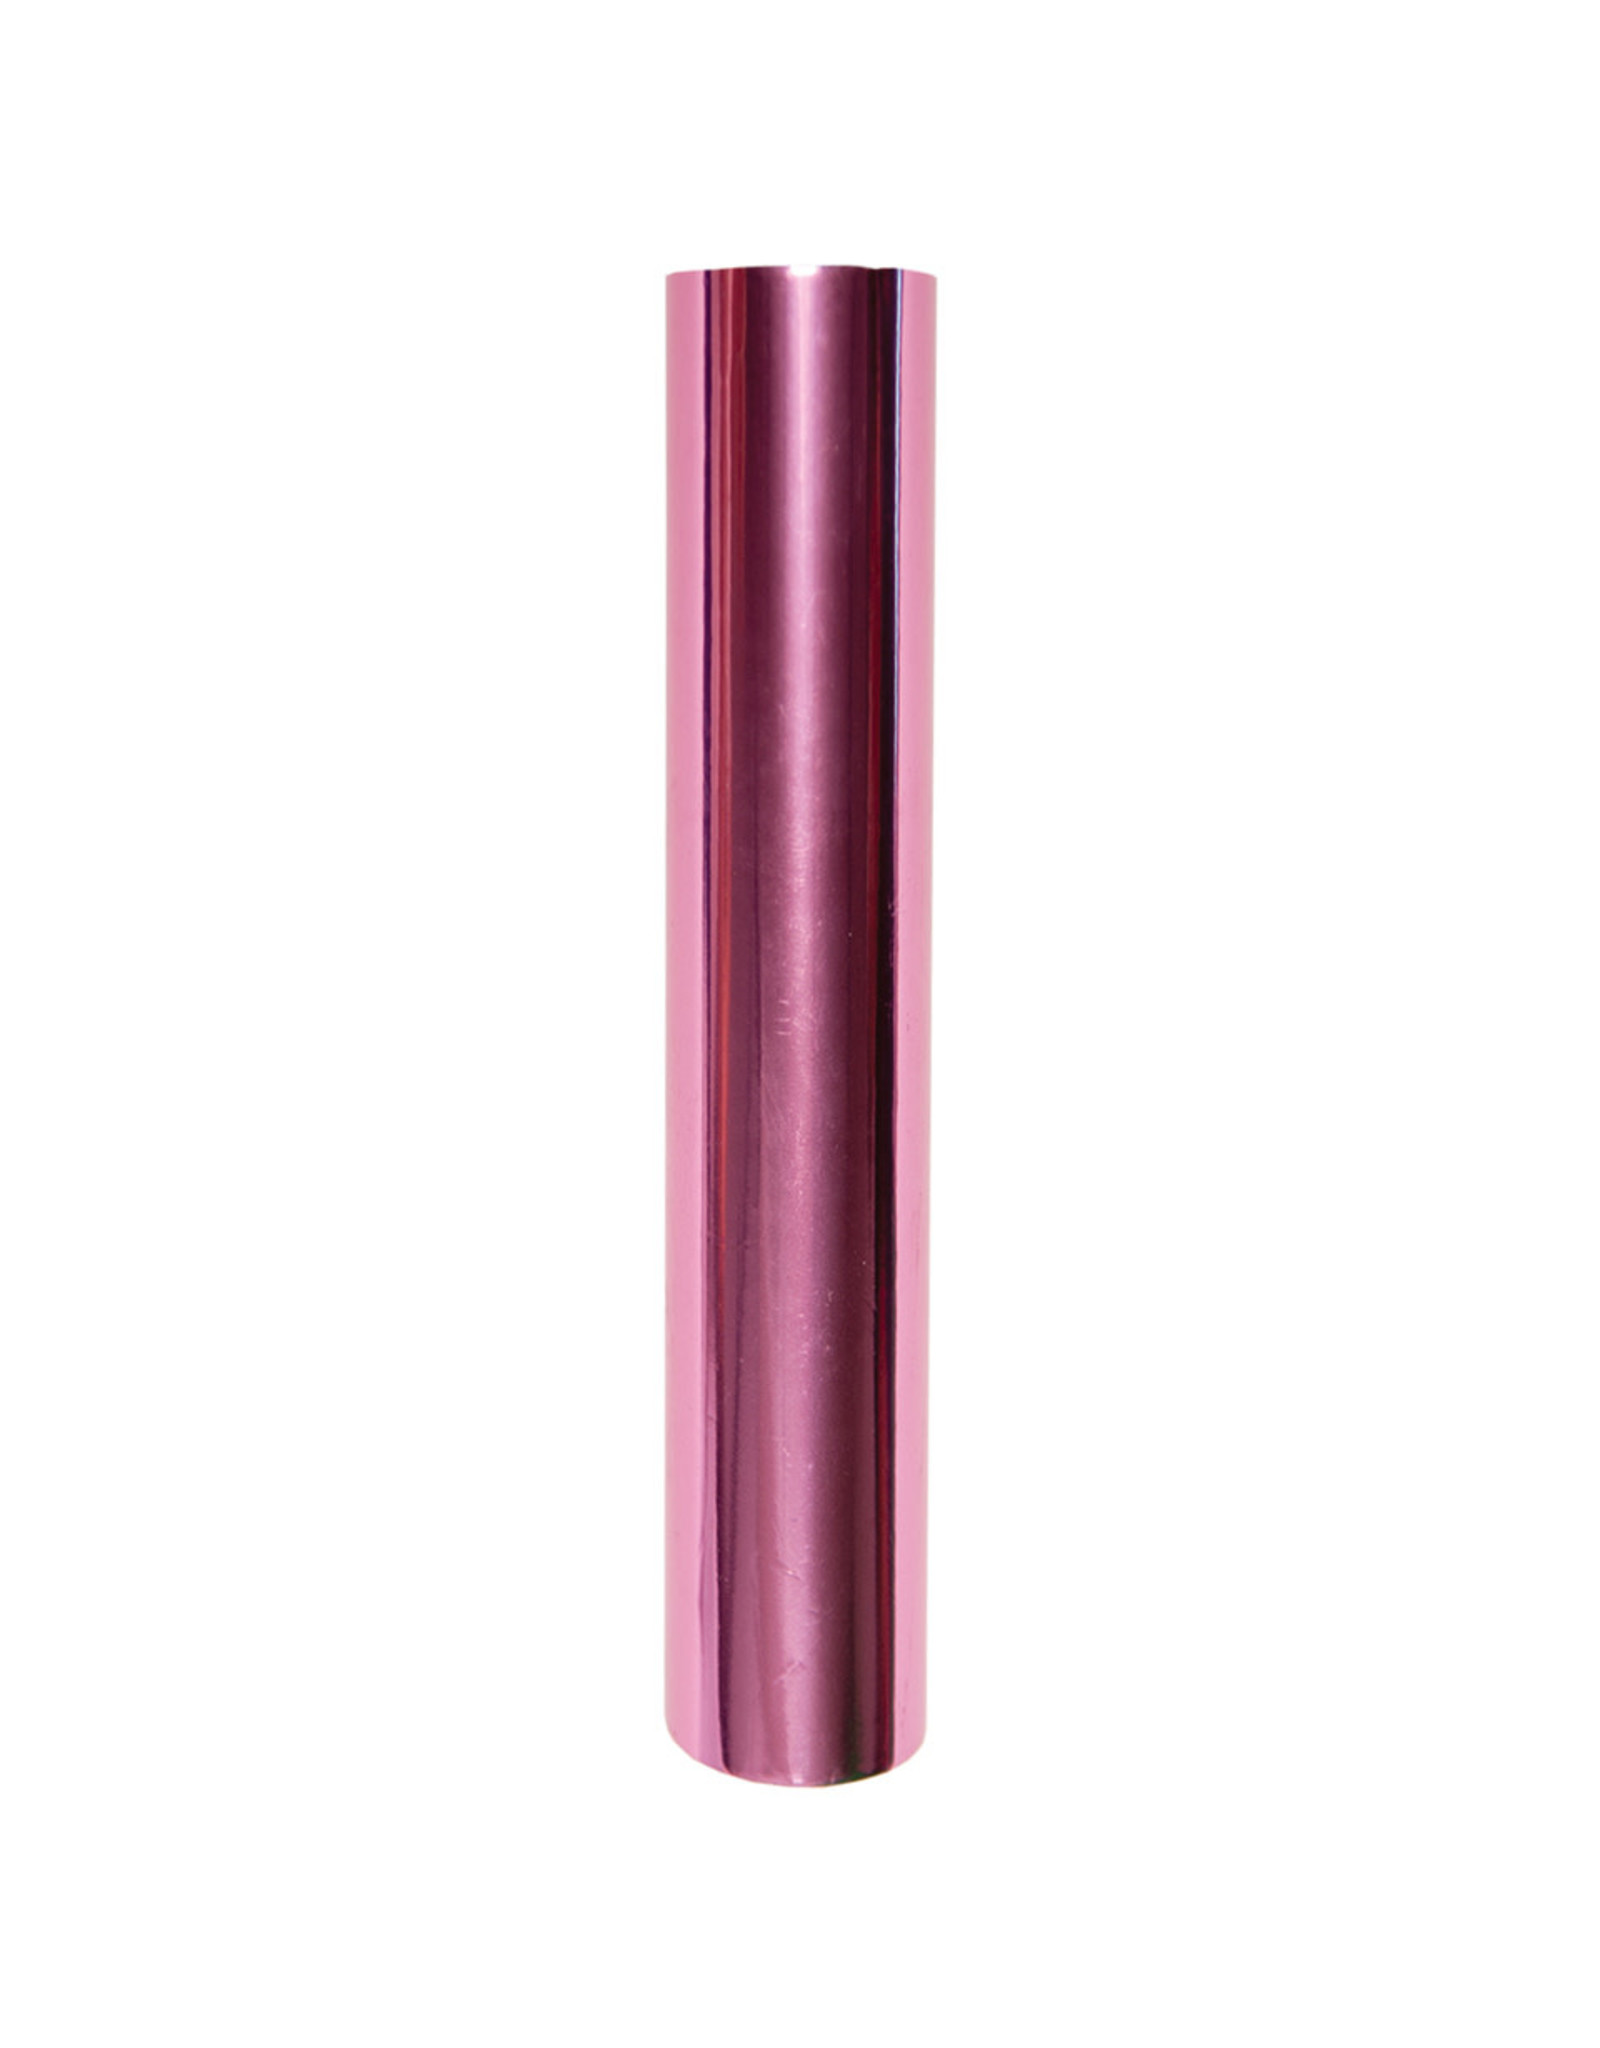 Spellbinders Glimmer Hot Foil - Pink